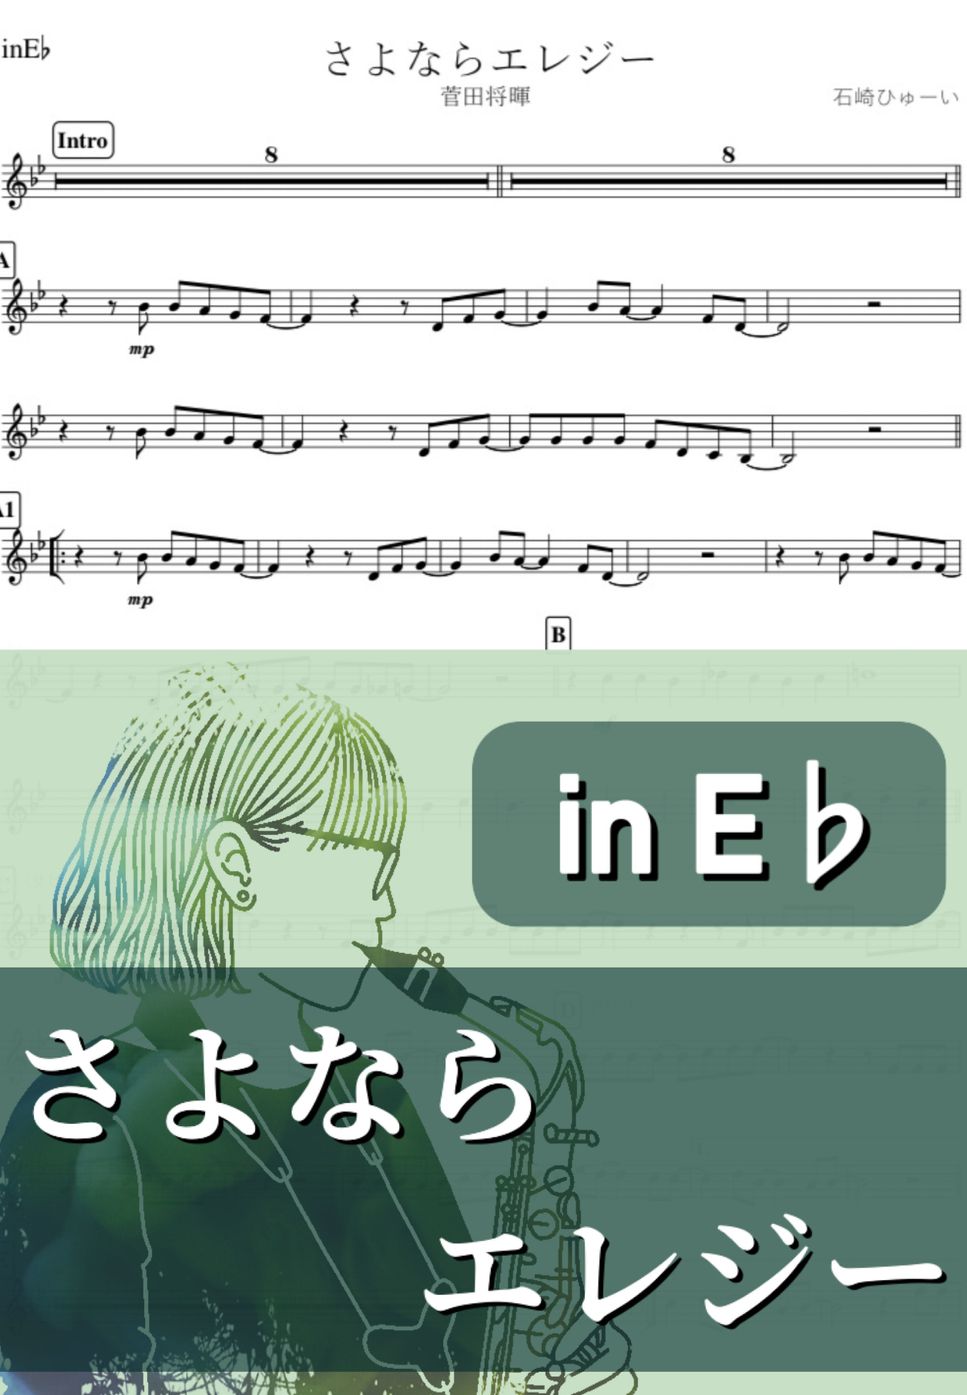 菅田将暉 - さよならエレジー (E♭) by kanamusic